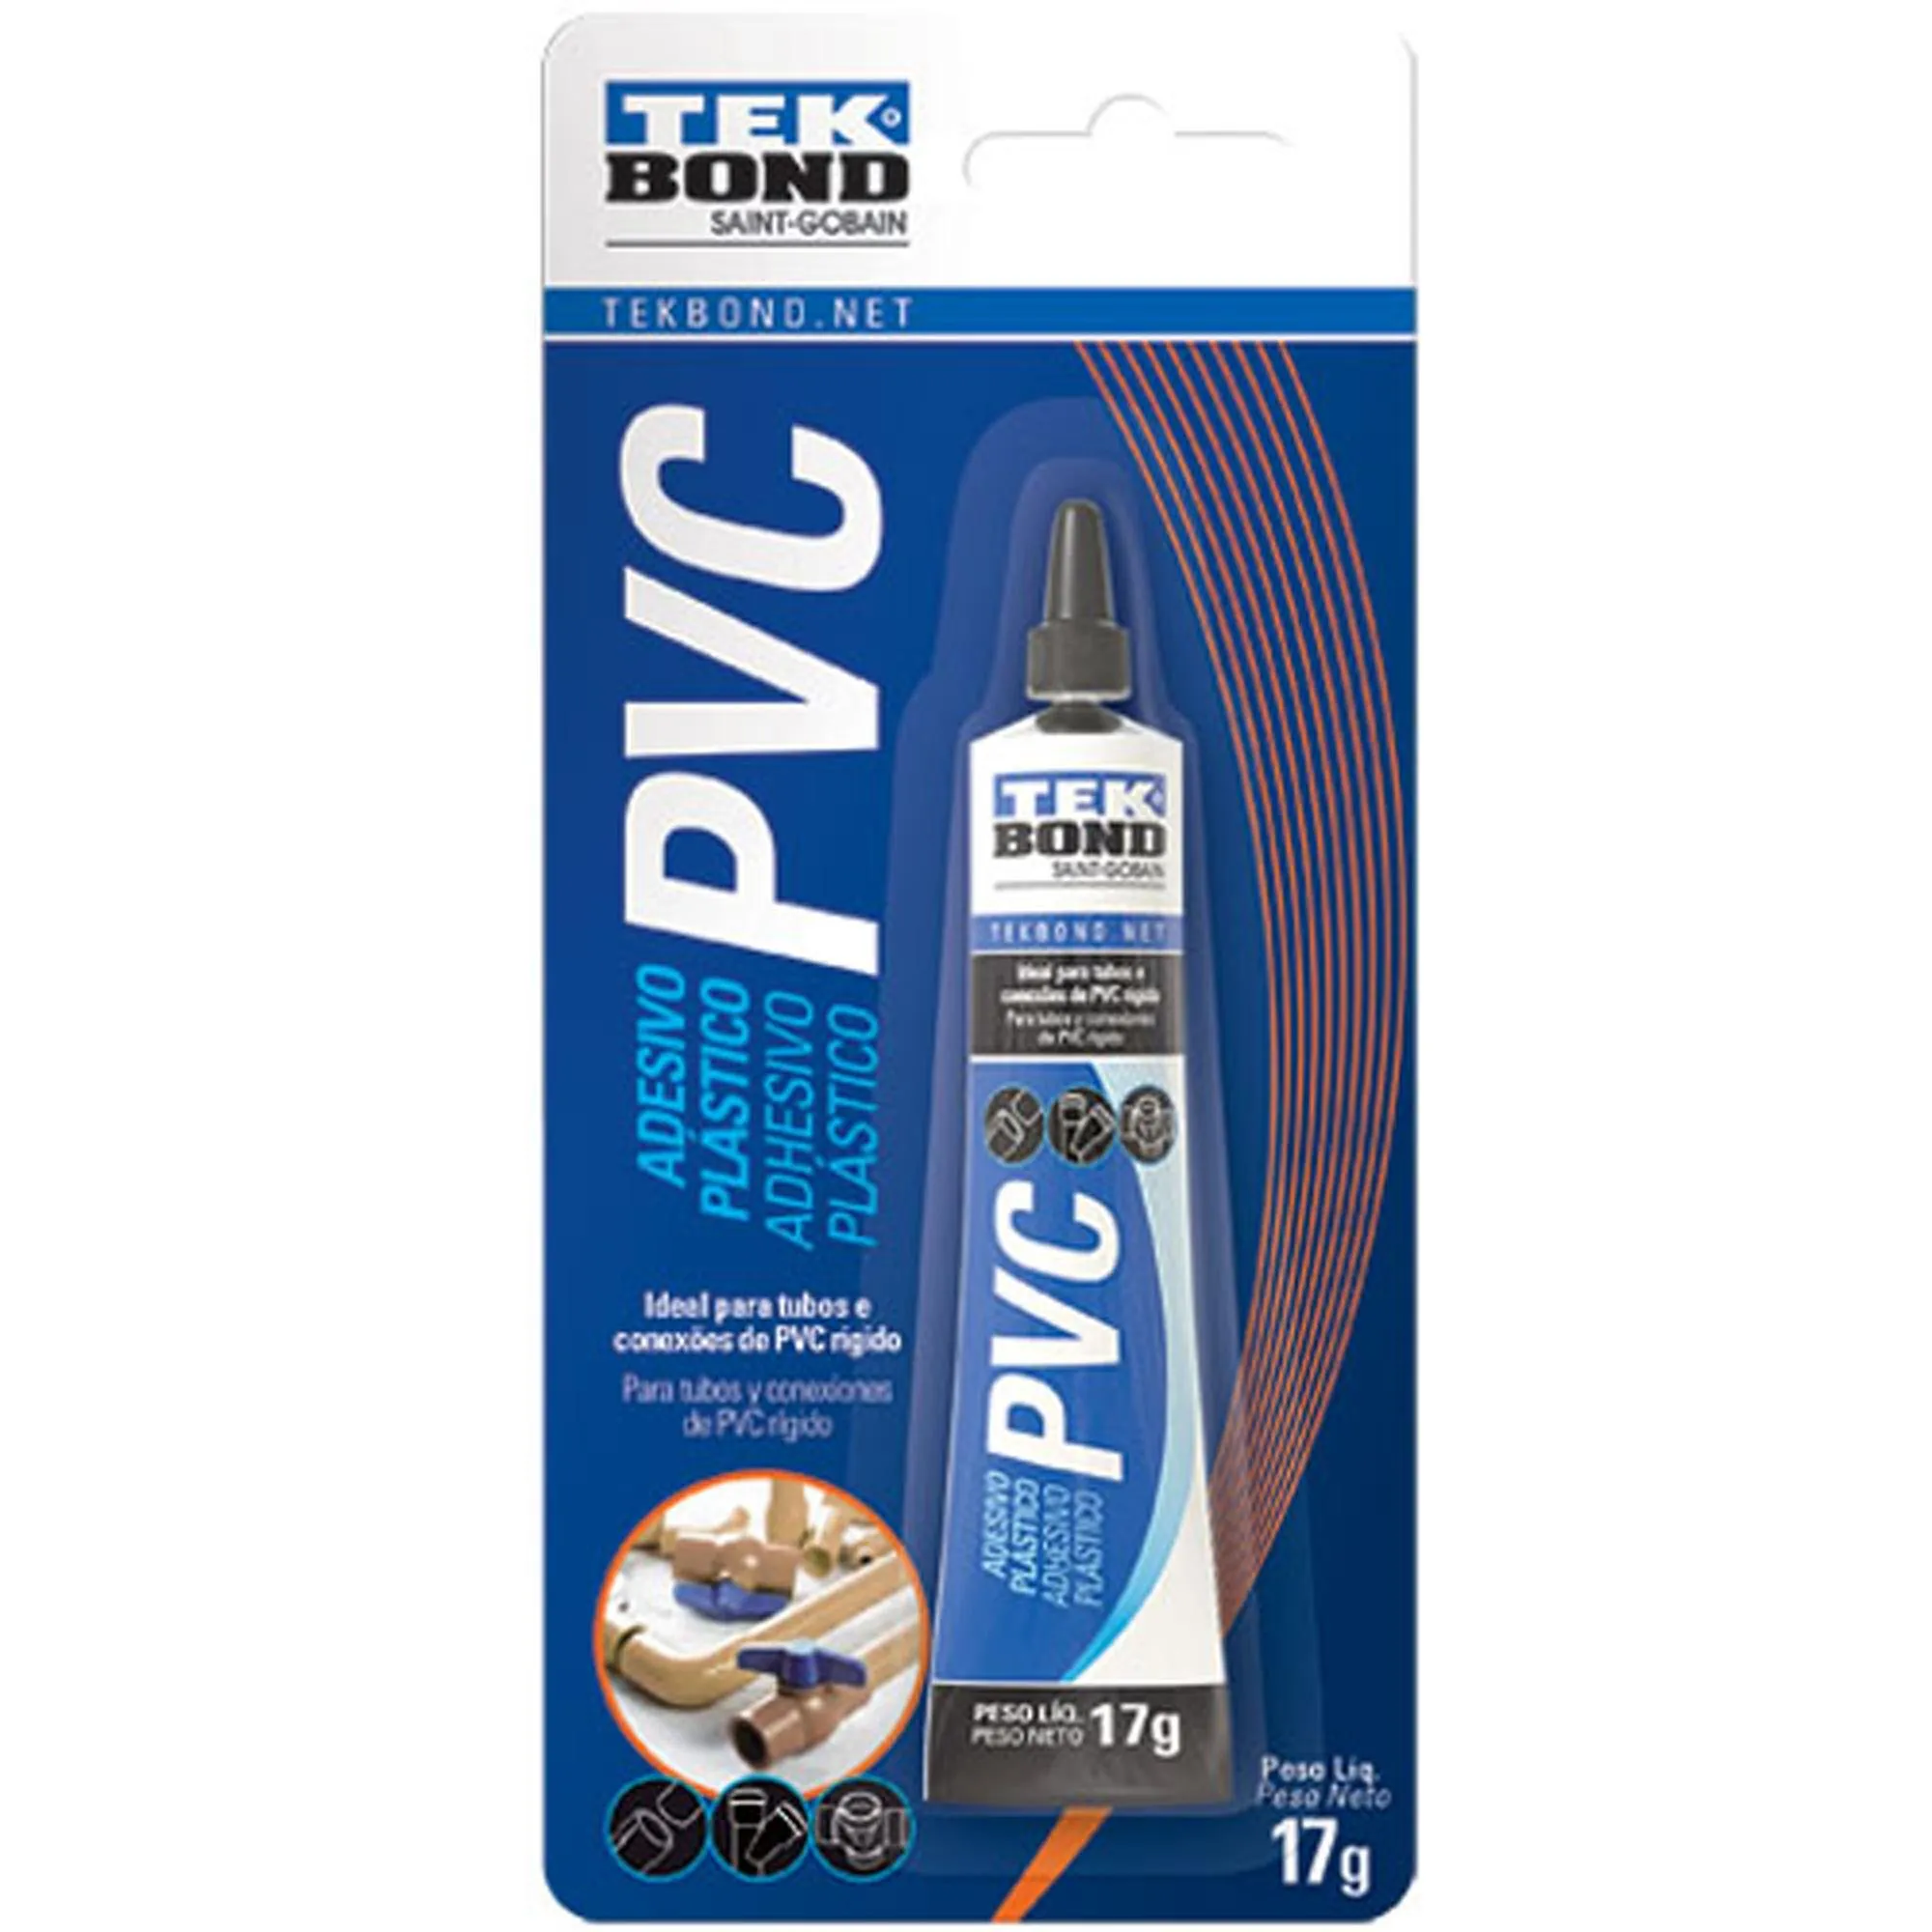 Adesivo Plástico Para Tubos de PVC 17g Blister Tekbond - Caixa Fechada (81335)